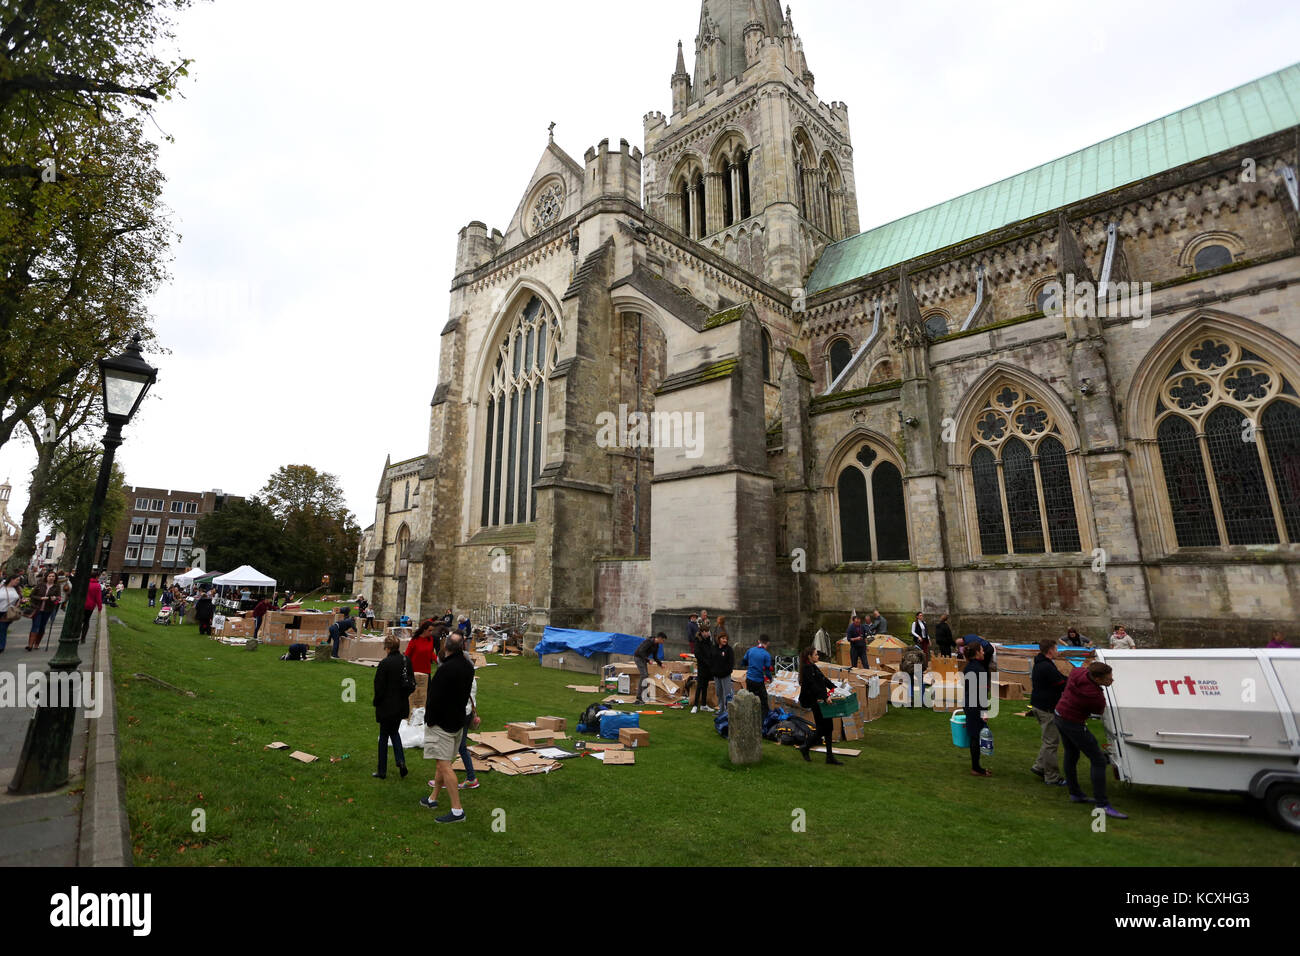 La grande cathédrale de Chichester à sleepout, West Sussex, UK. un événement annuel pour amasser des fonds pour les sans-abri la charité. stonepillow Banque D'Images